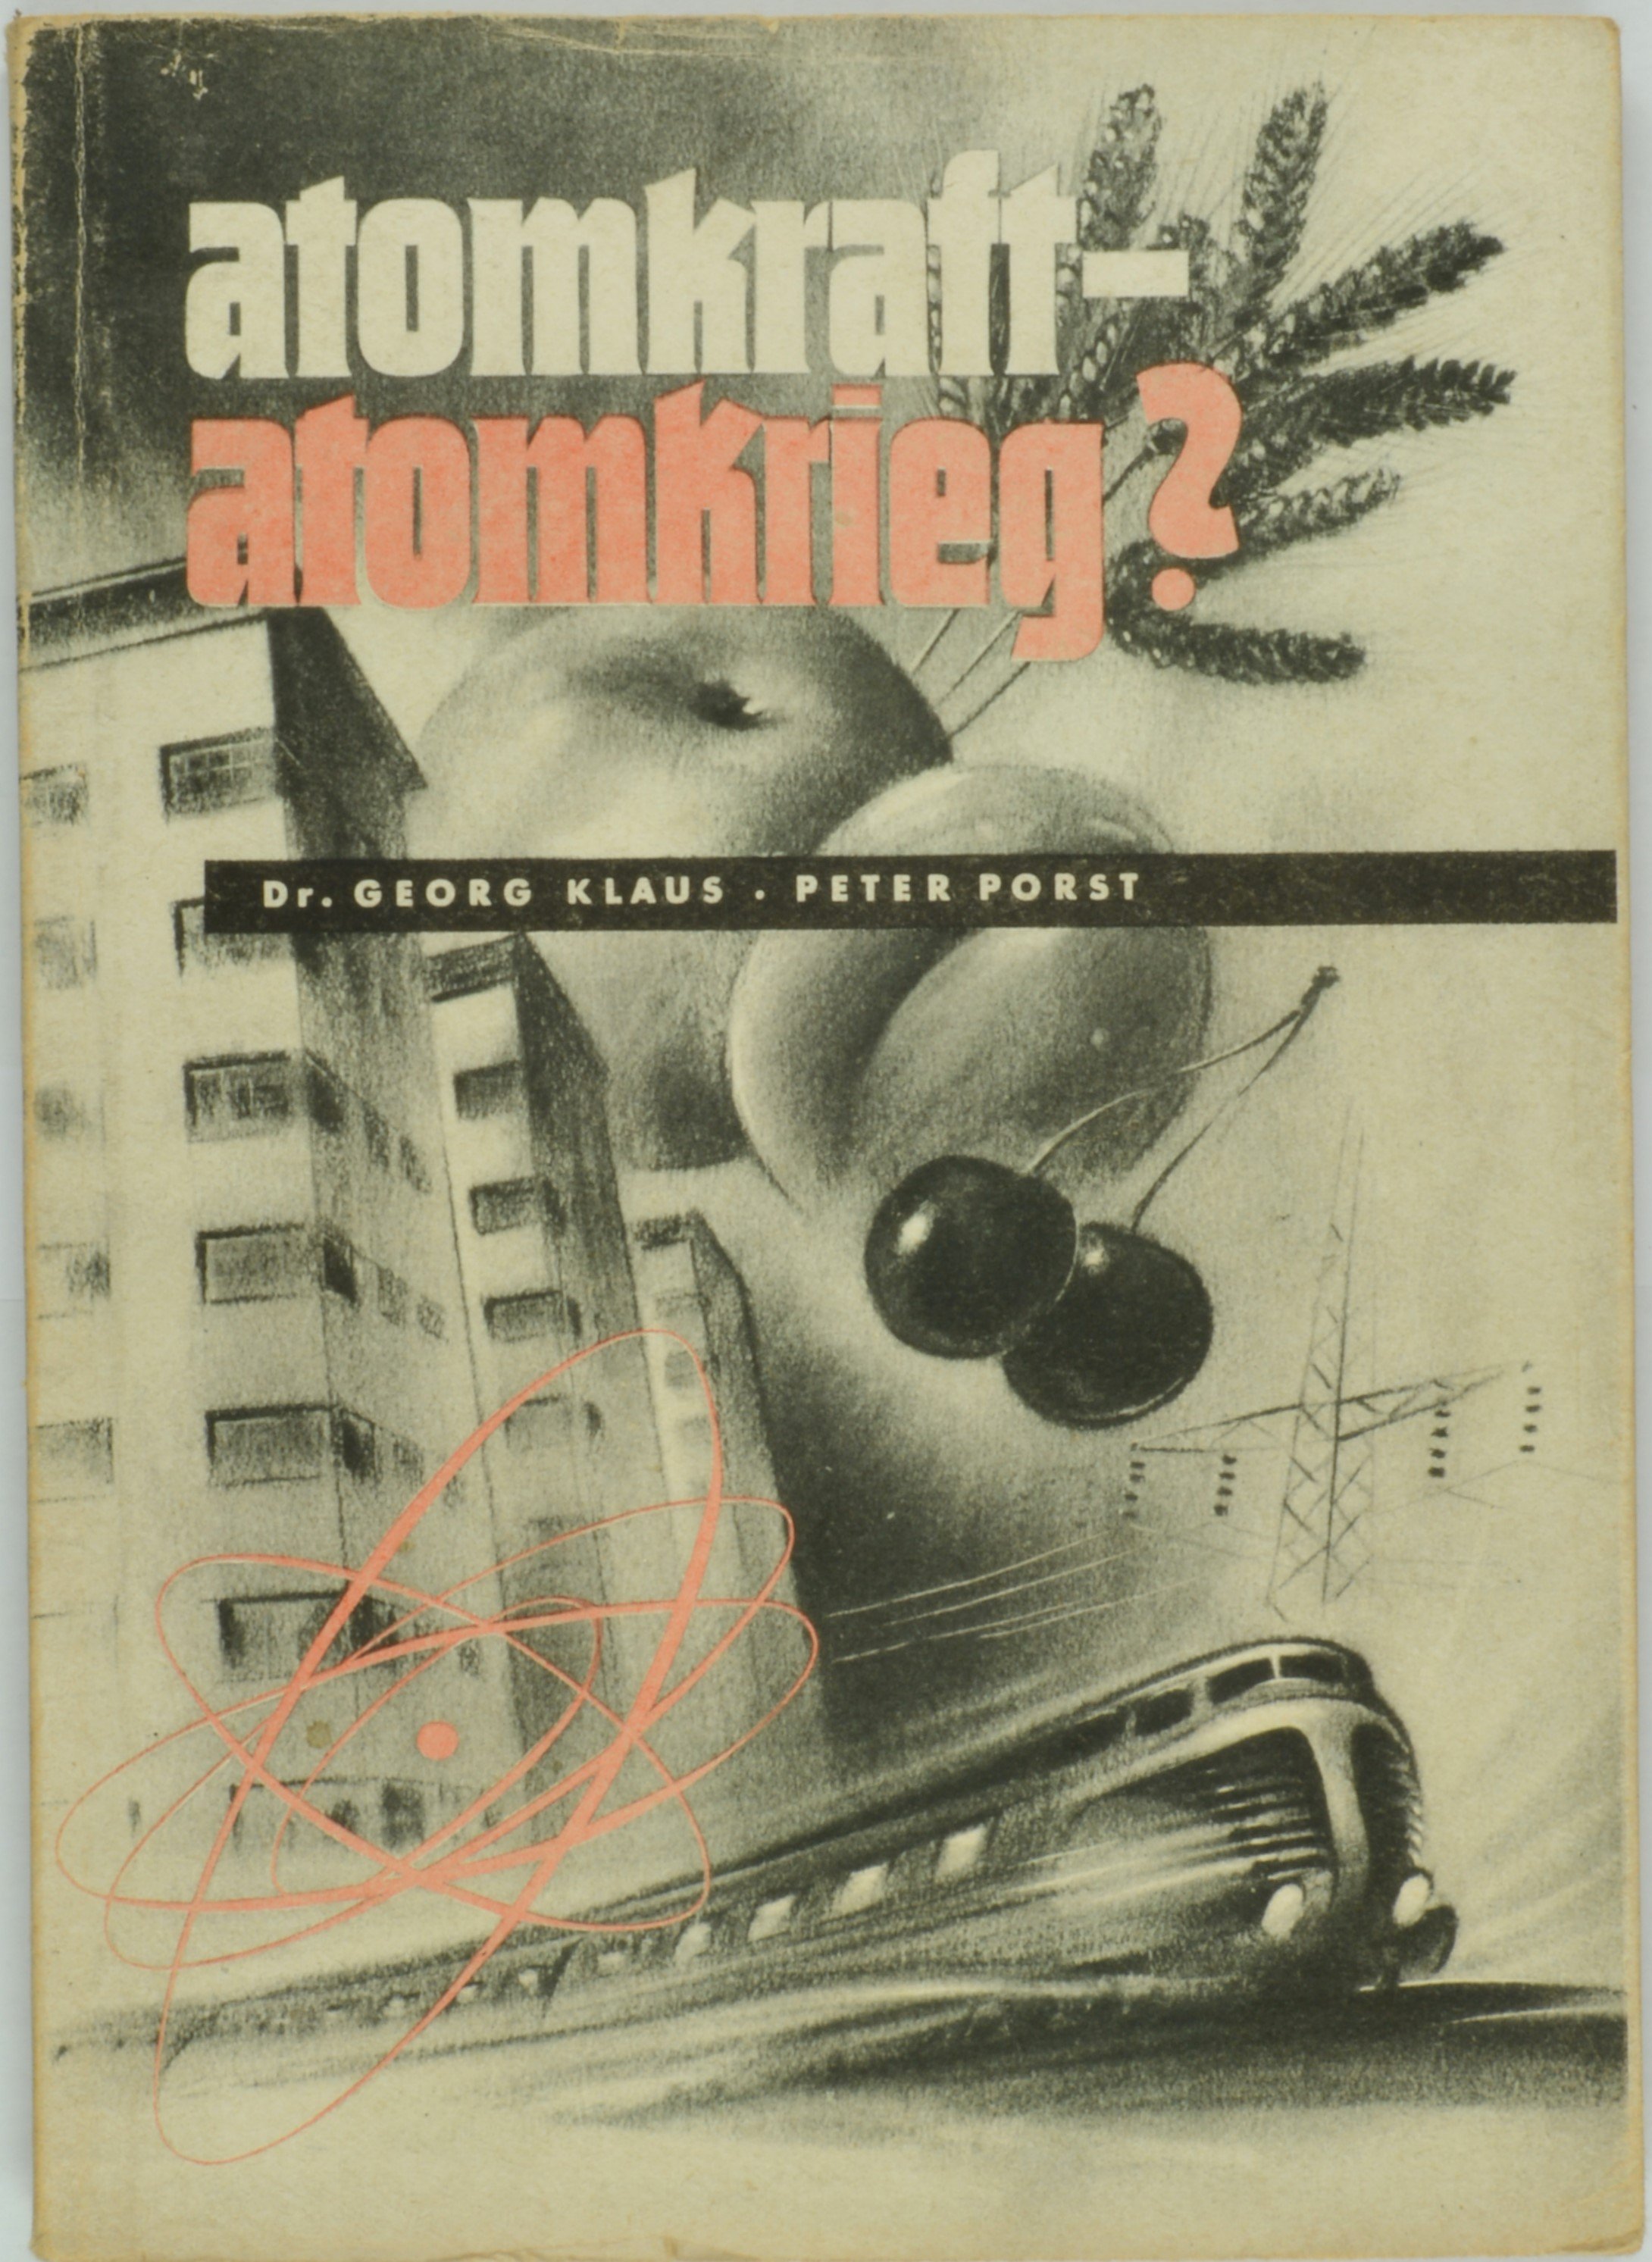 Buch: Georg Klaus: atomkraft-atomkrieg?, Berlin 1949 (DDR Geschichtsmuseum im Dokumentationszentrum Perleberg CC BY-SA)